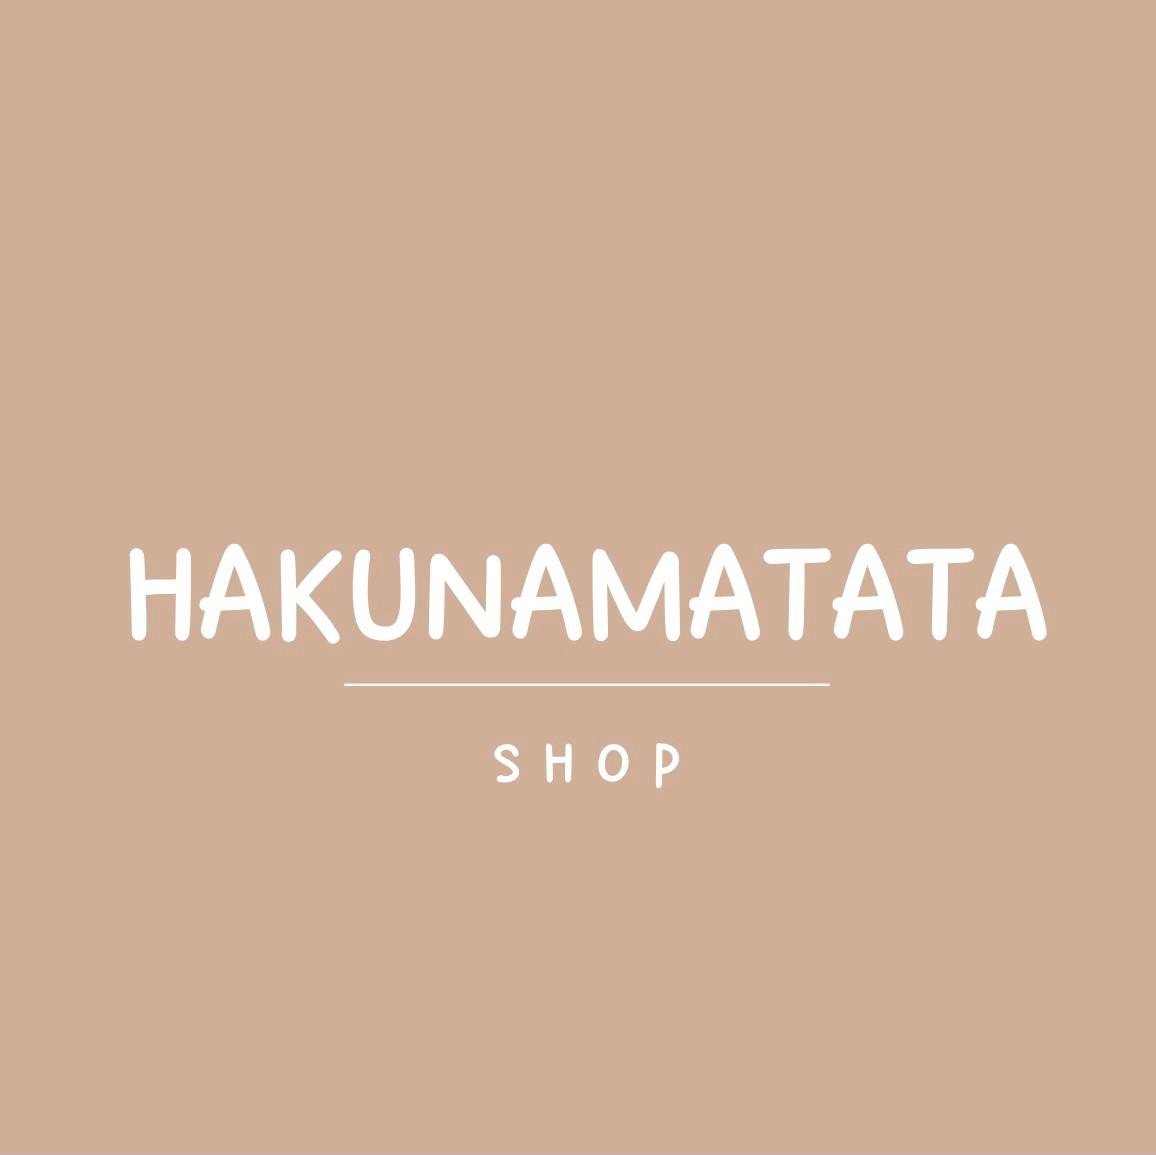 Hakunamatata’shop